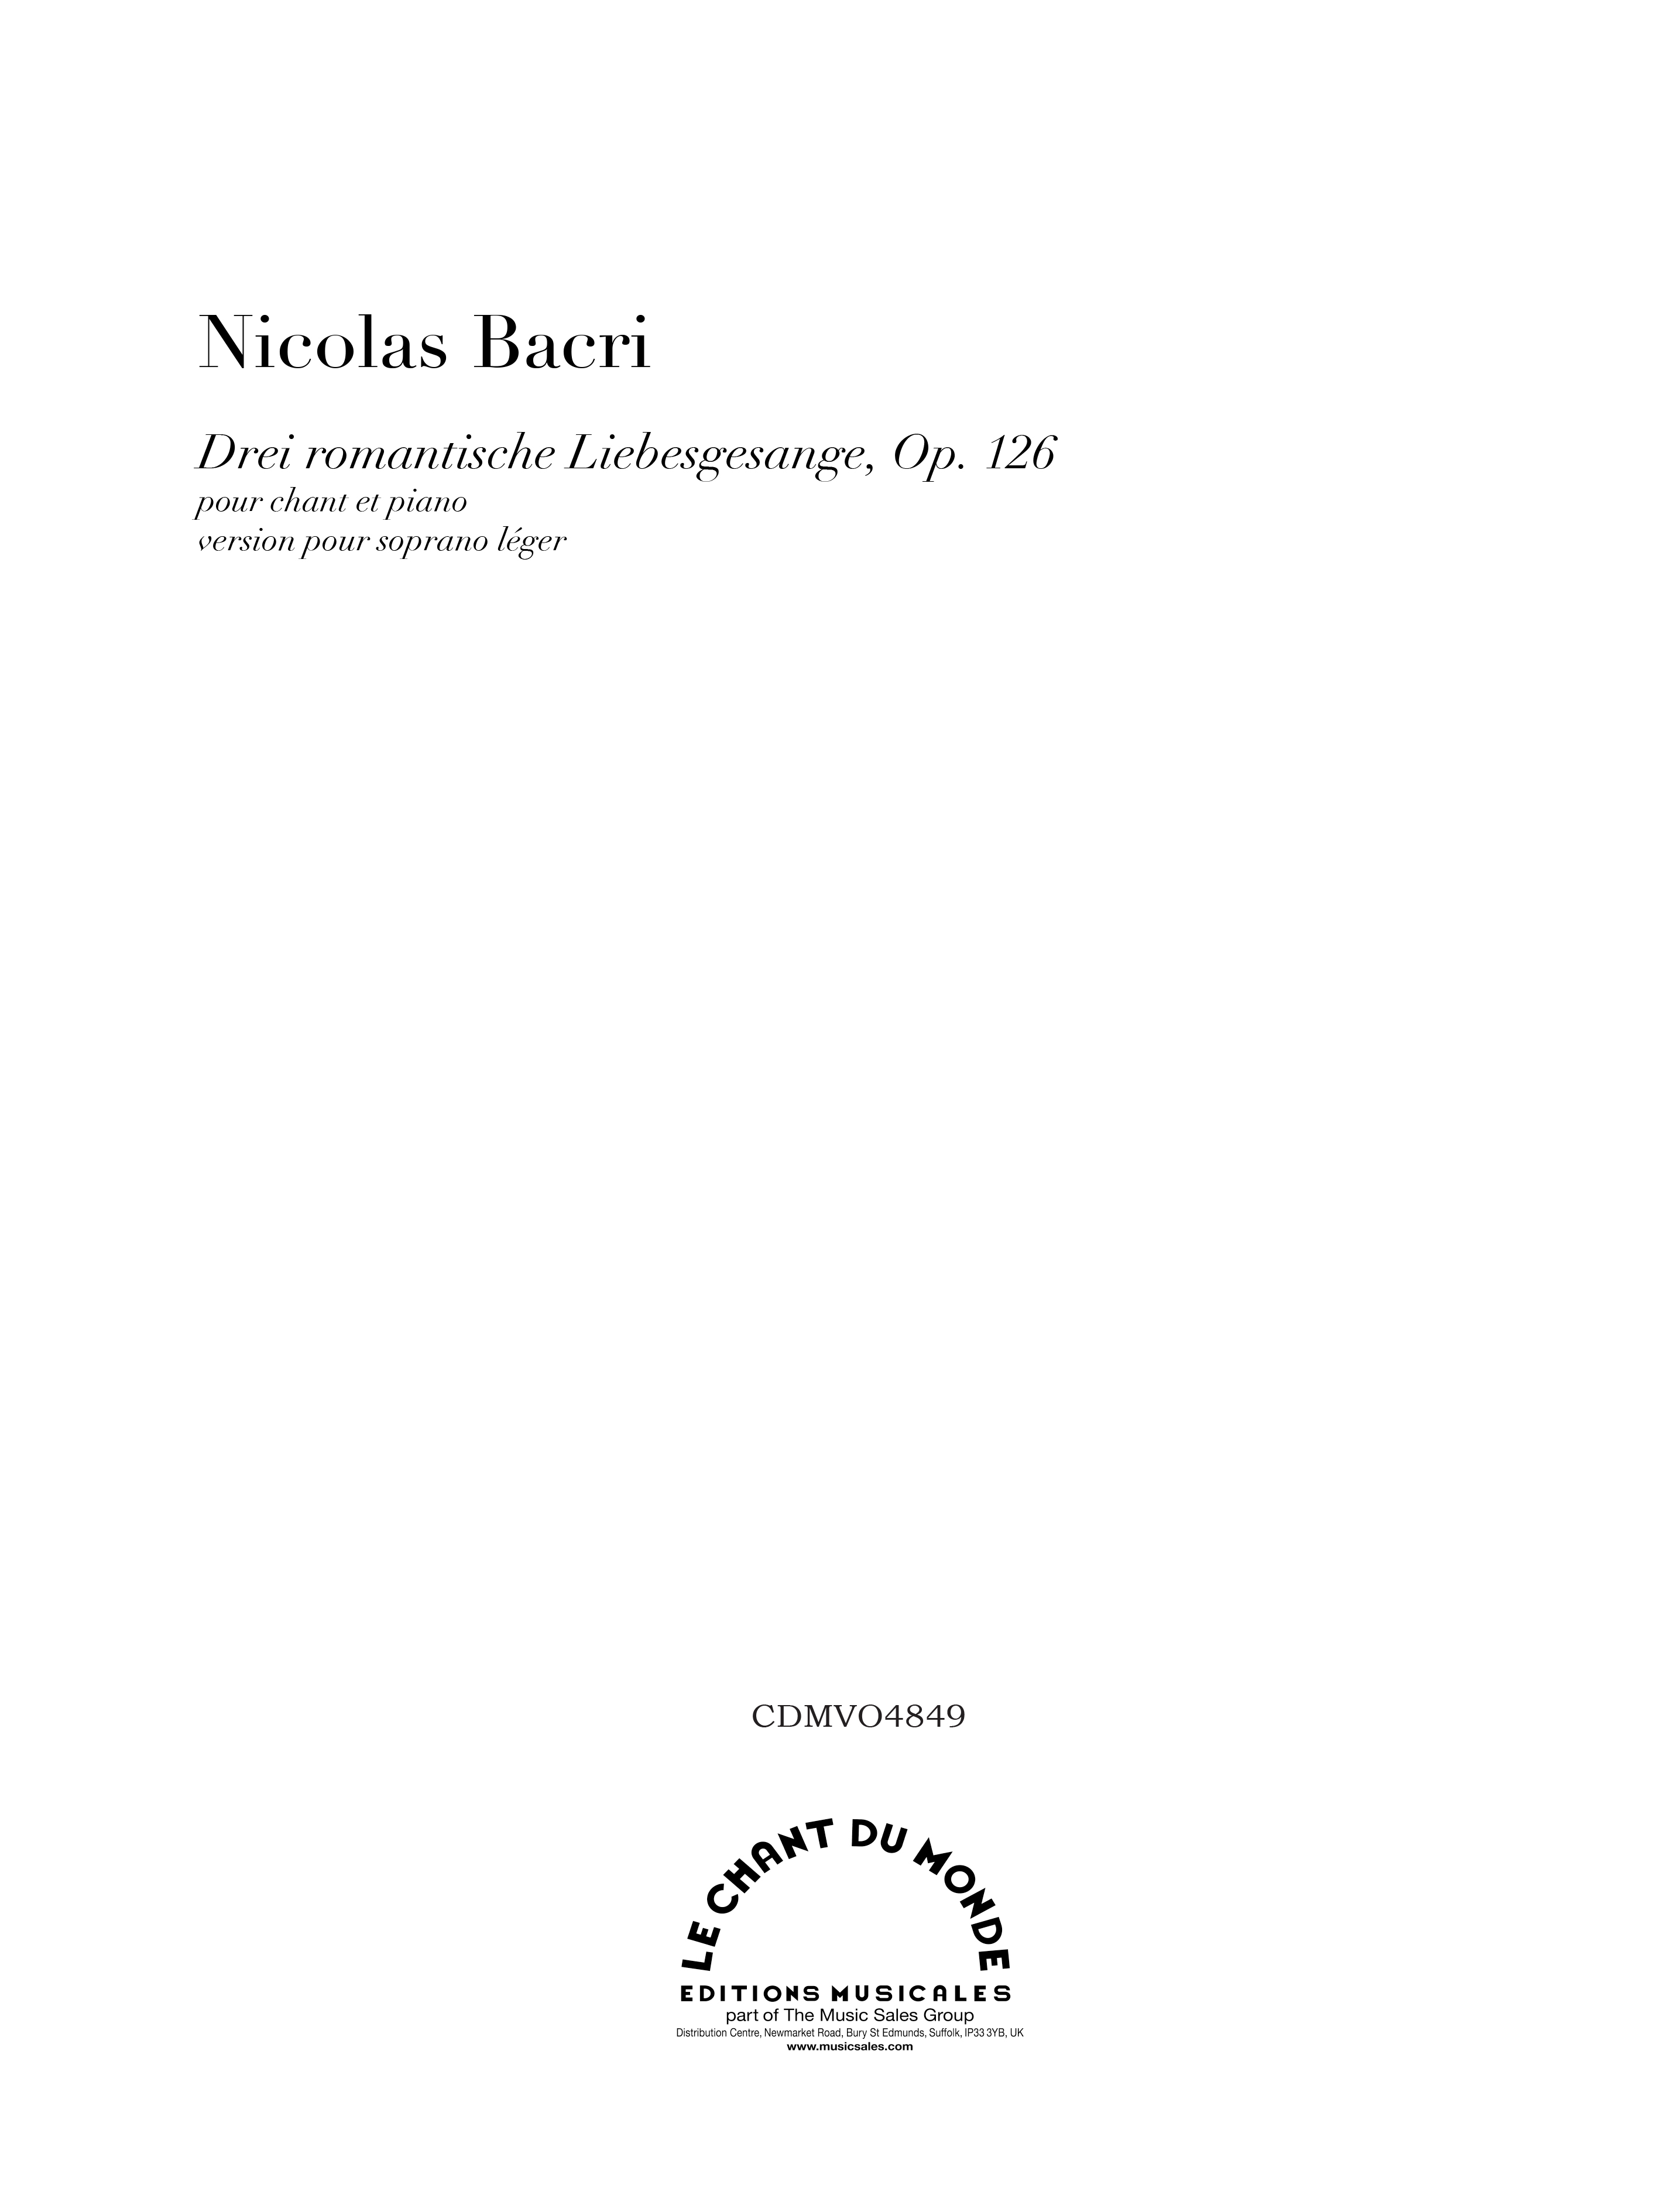 Nicolas Bacri: Drei Romantische Liebesgesange (Soprano): Soprano: Vocal Score